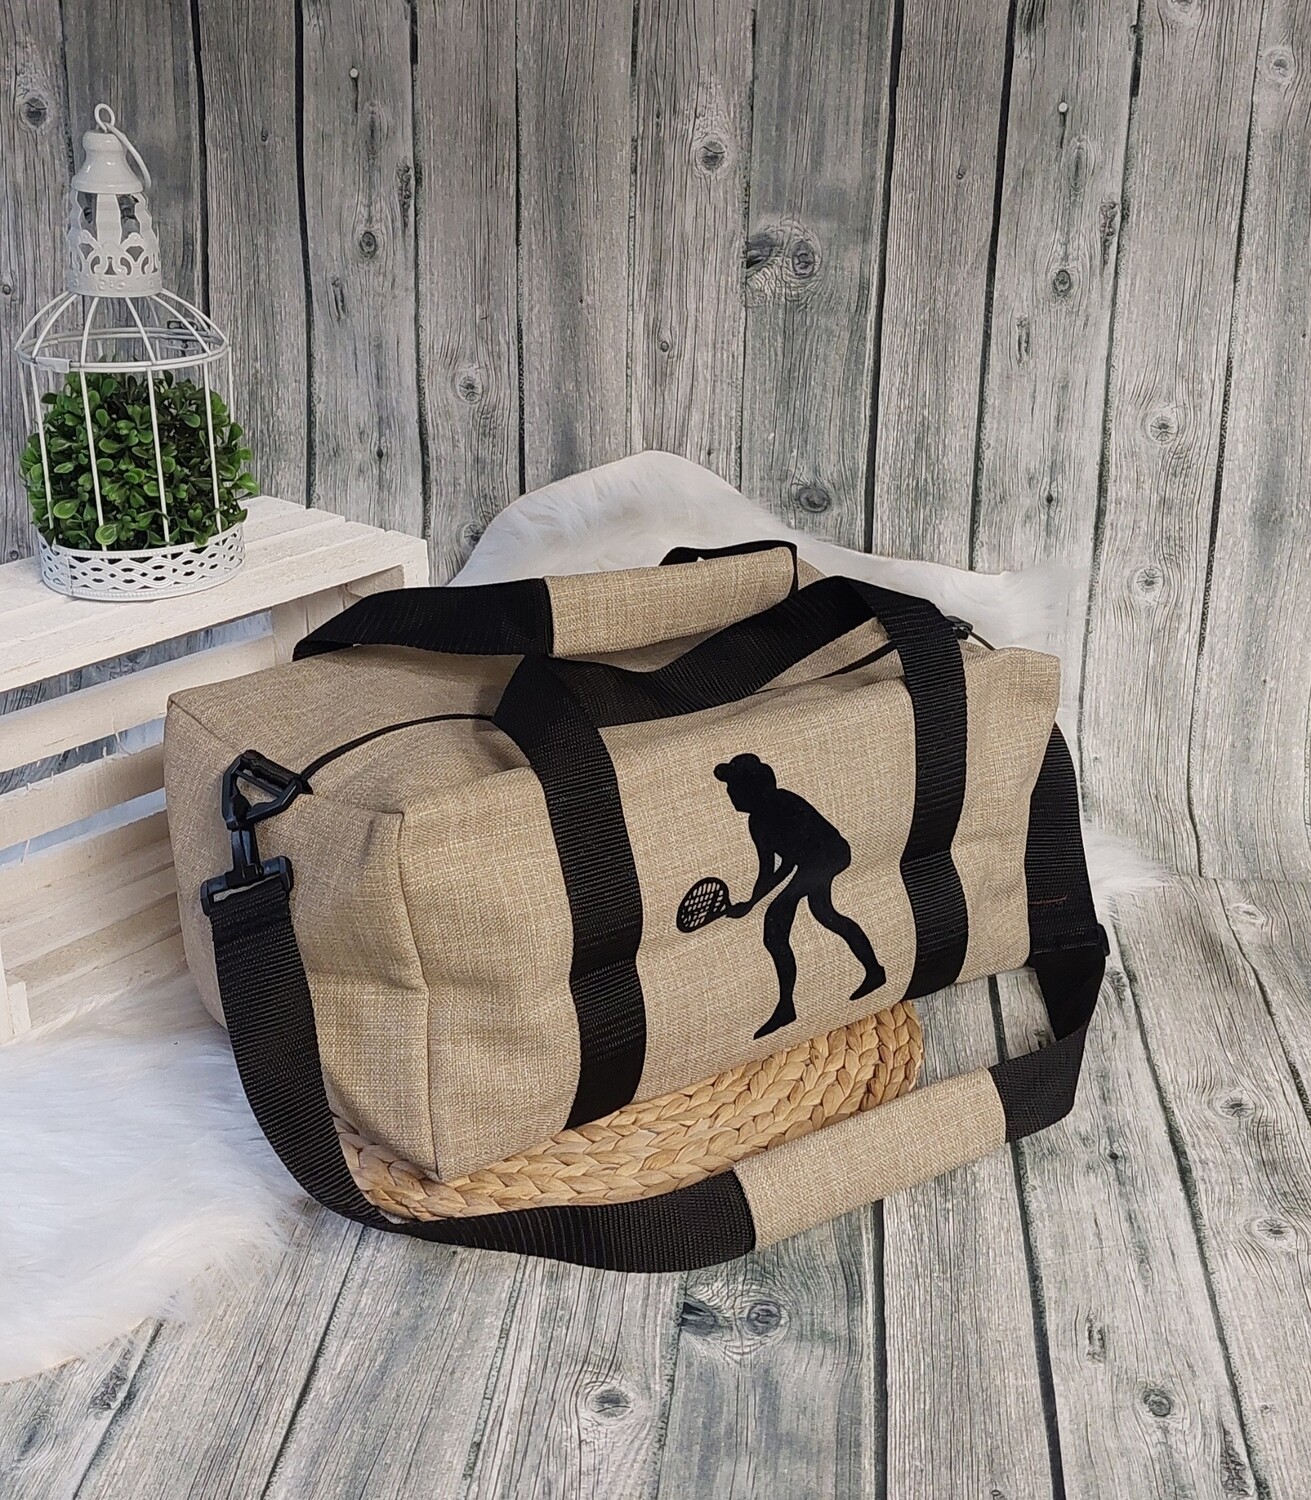 Sport-/Reisetasche L (Farbbeispiel sand) Aufdruck Tennis, Handgepäck, Urlaubstasche, Tasche aus Polstercanvas in 36 Farben